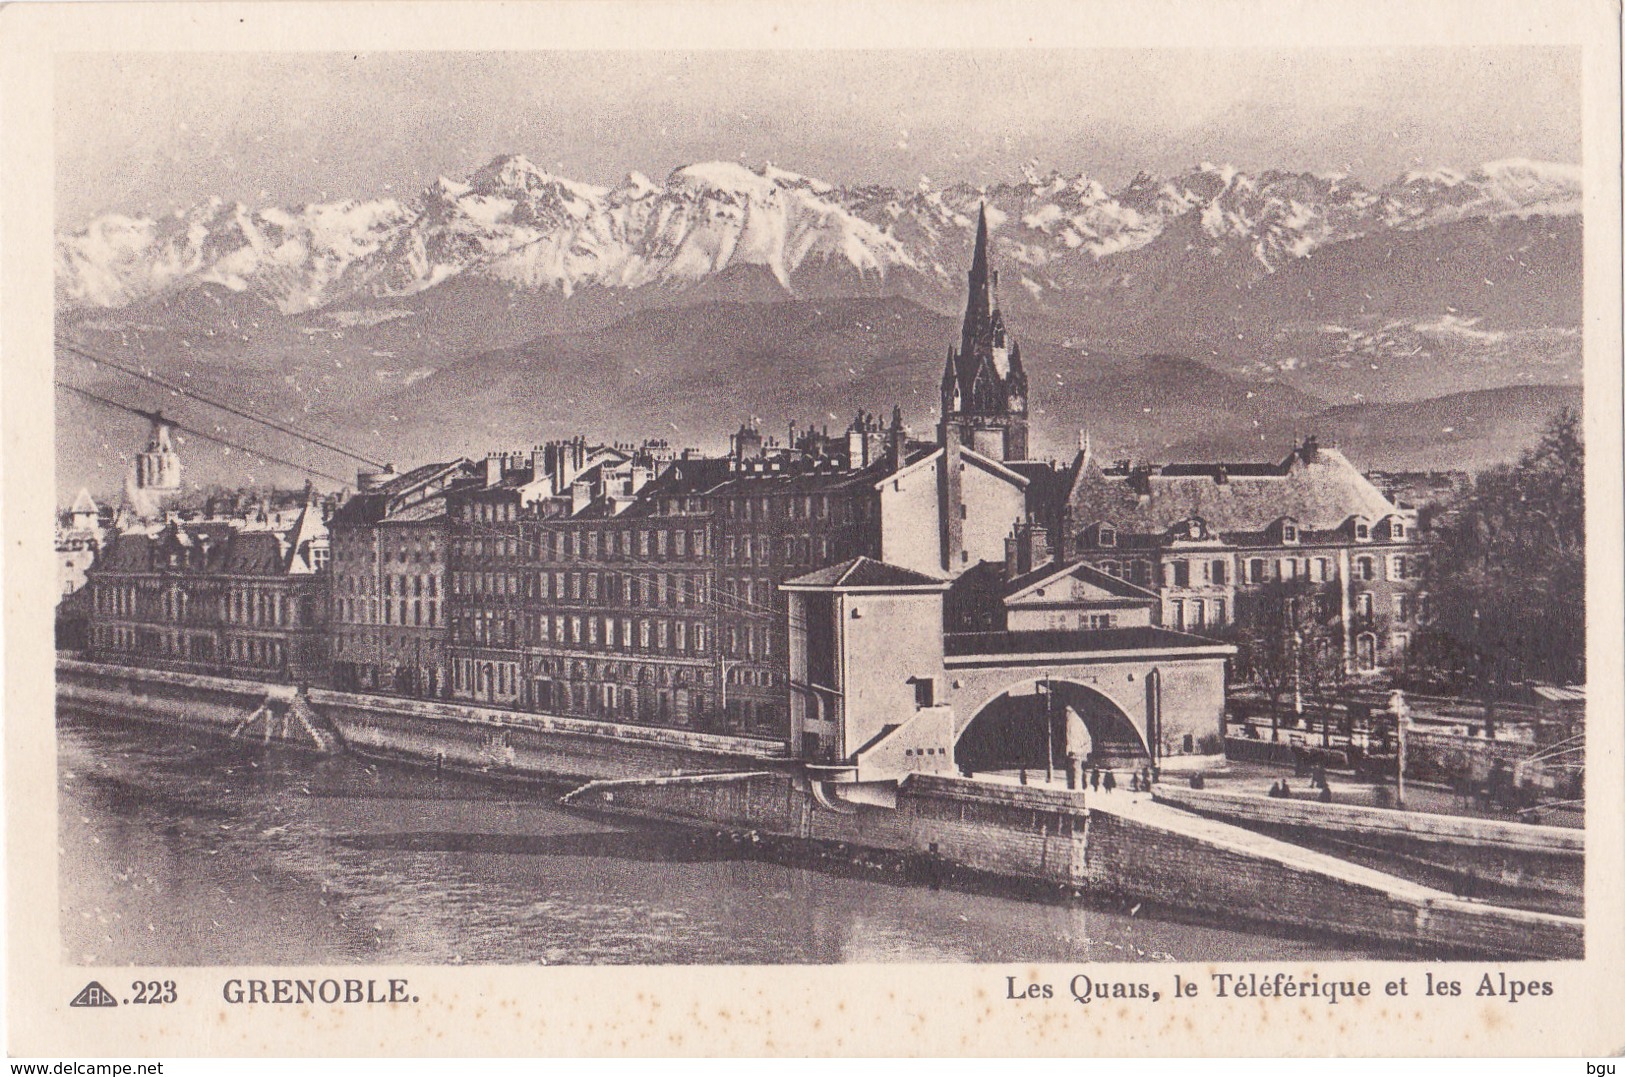 Grenoble (38) - Lot de 10 cartes - Format 9x14 - toutes scannées